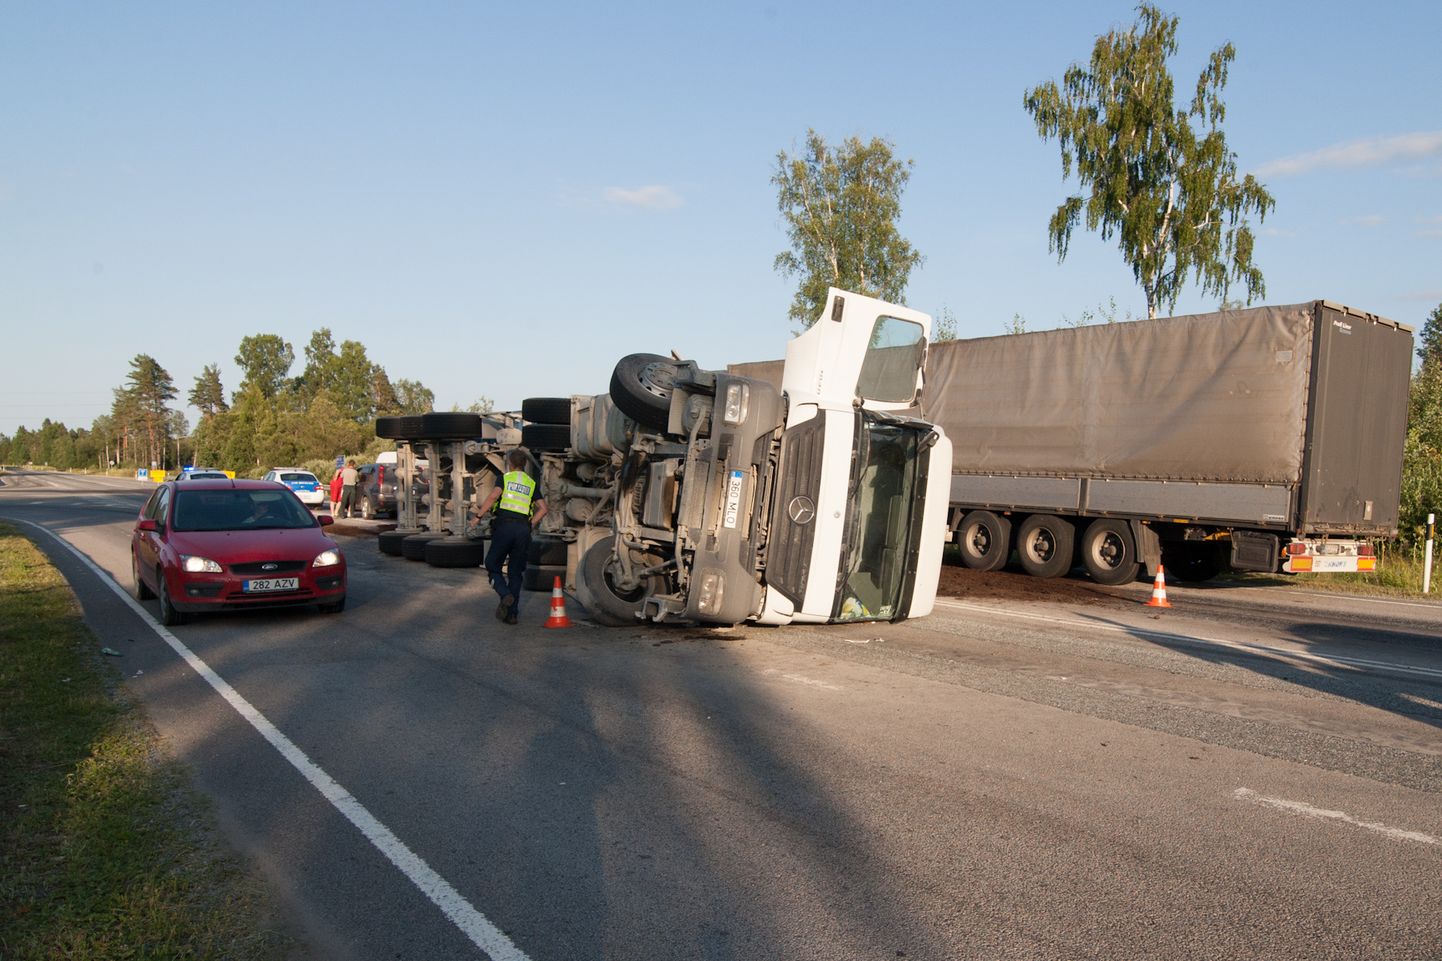 Уставший водитель фуры представляет большую опасность на дороге, поскольку авария с участием большого грузовика может иметь очень тяжкие последствия. Снимок иллюстративный.